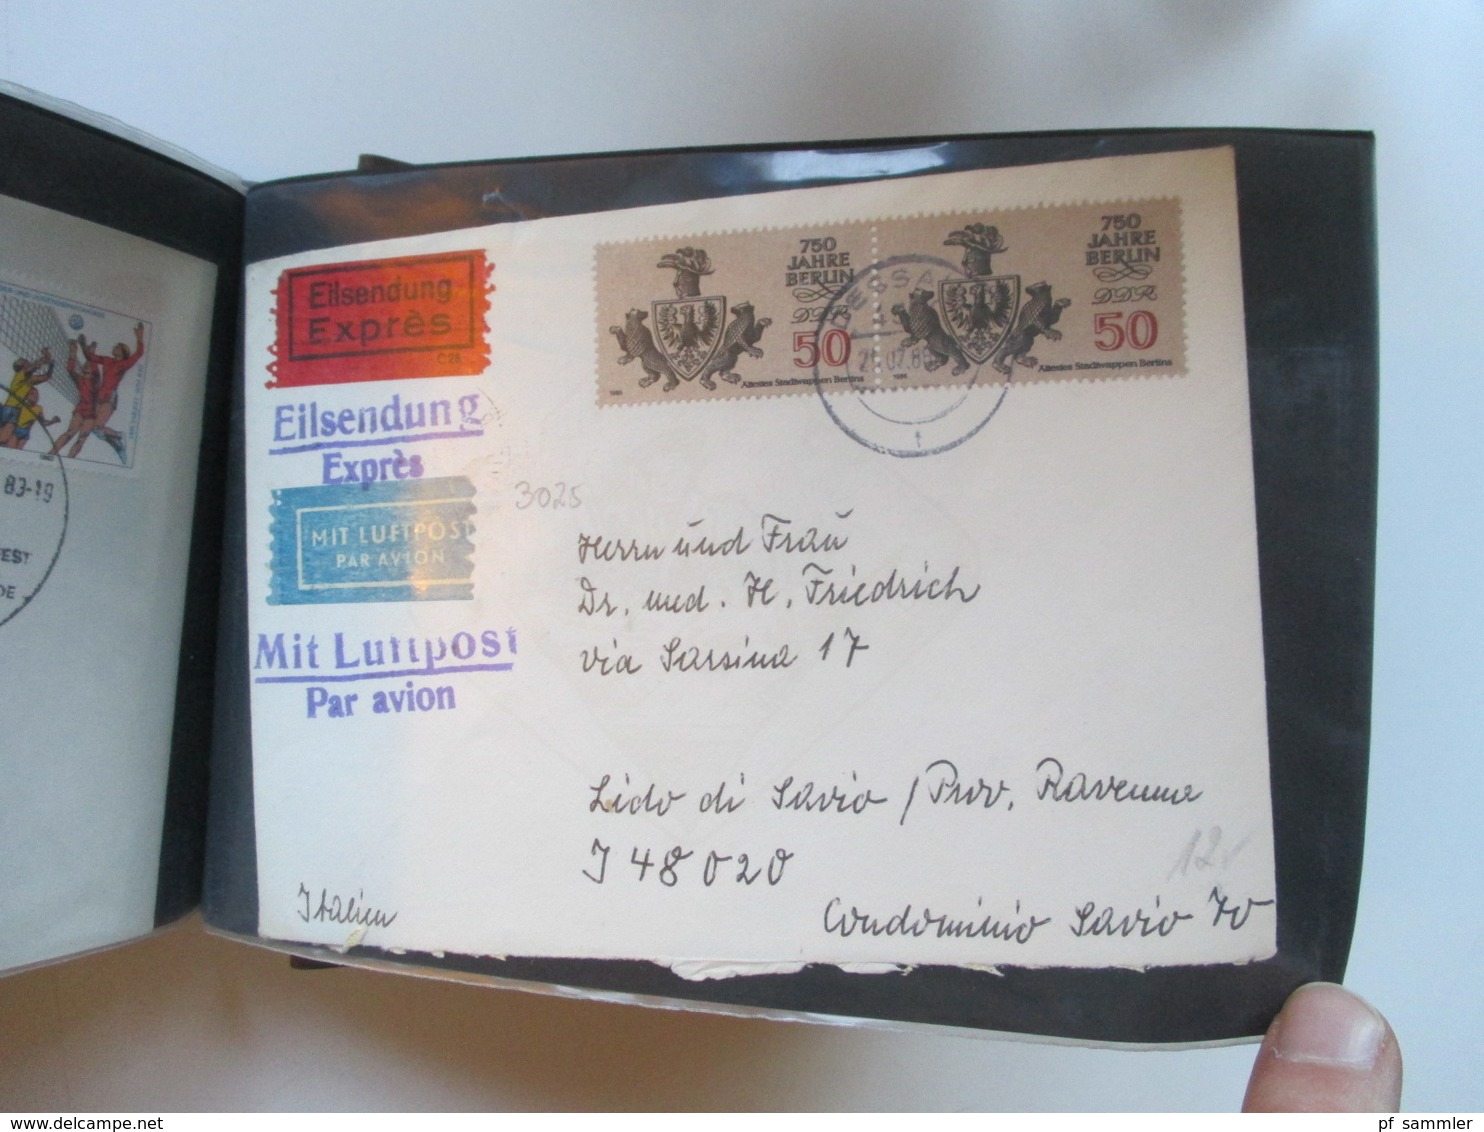 DDR Belegeposten ab 1960 Eilboten / Einschreiben / echt gelaufene FDC usw. insgesamt 85 Stk. etl.Tagesstempel Meiningen